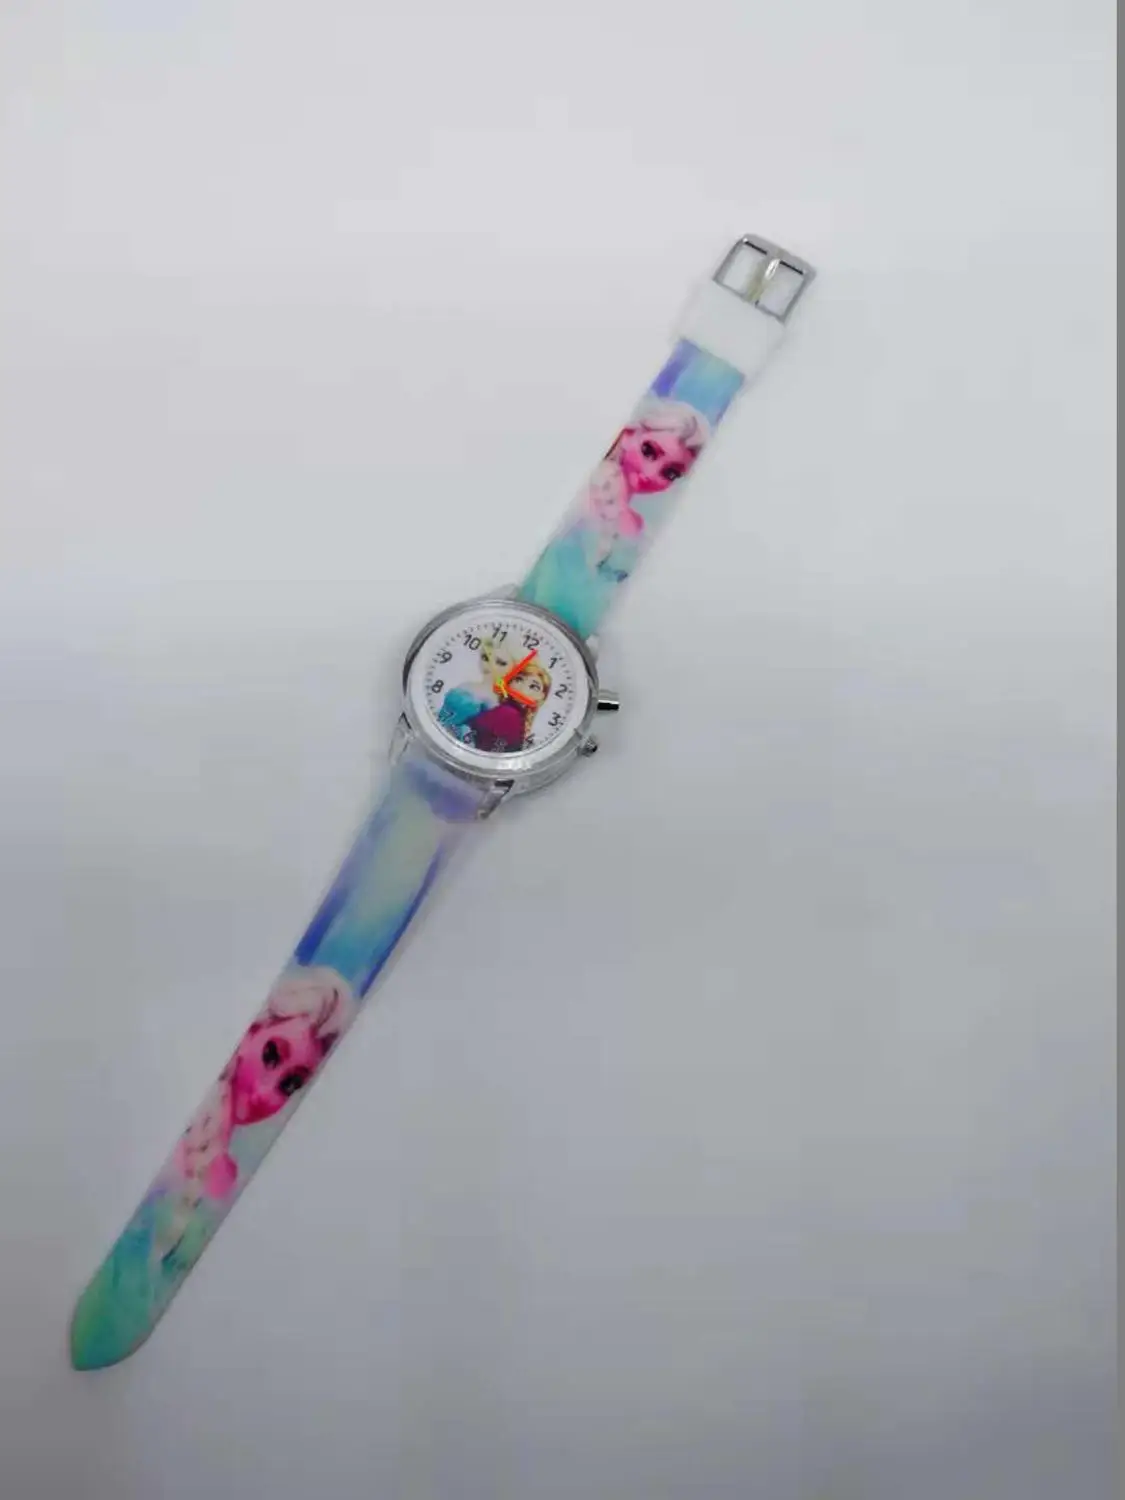 Новые детские часы с героями мультфильмов Эльза Принцесса электронный источник света дети часы девушки день рождения подарок часы - Цвет: Небесно-голубой